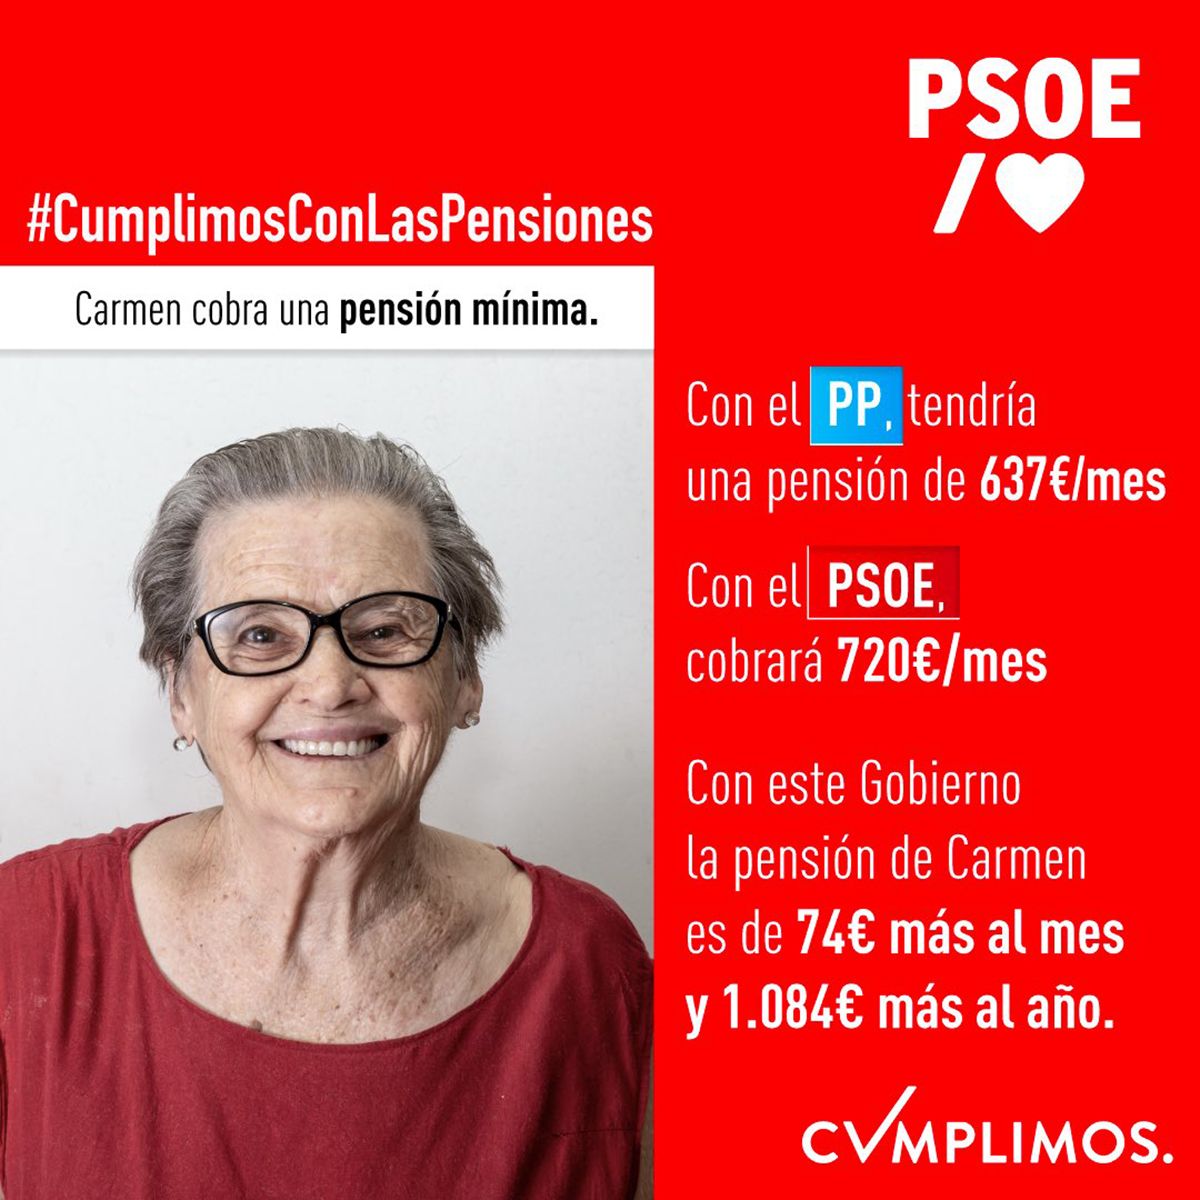 Carmen, la pensionista 'fake': el PSOE usa un banco de imágenes en su campaña sobre las pensiones